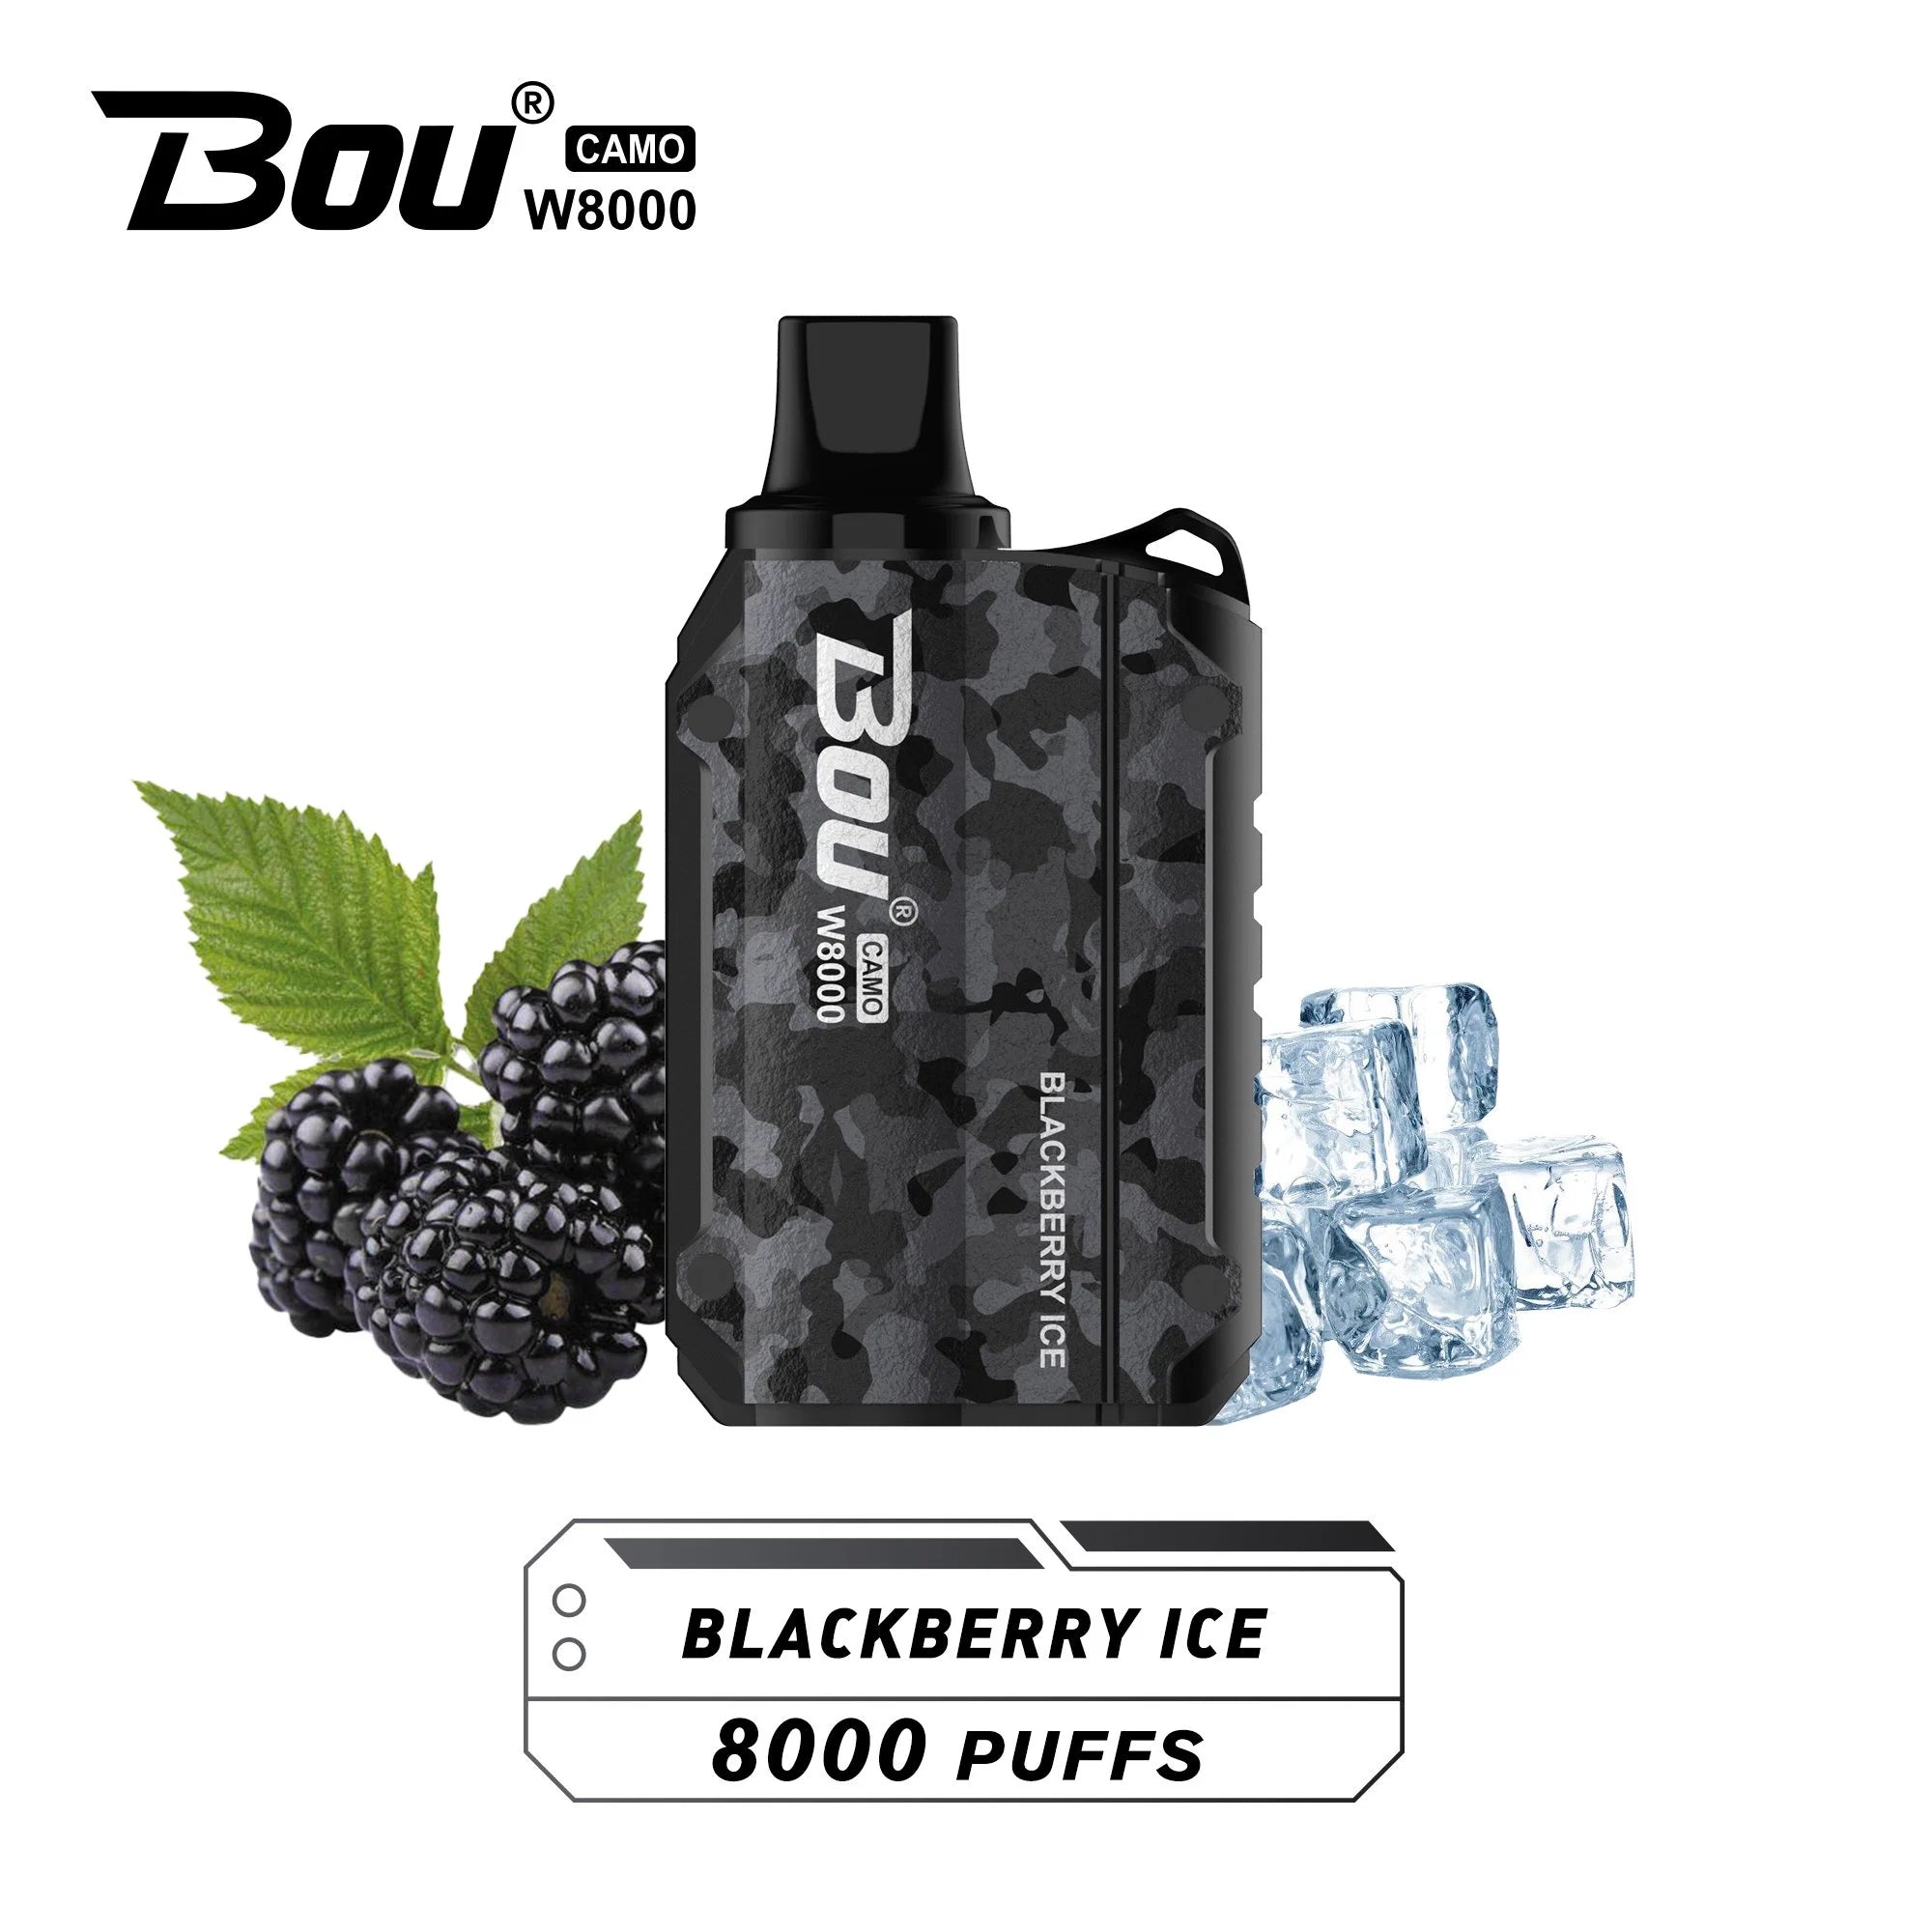 BOU CAMO W8000 - BLACKBERRY ICE